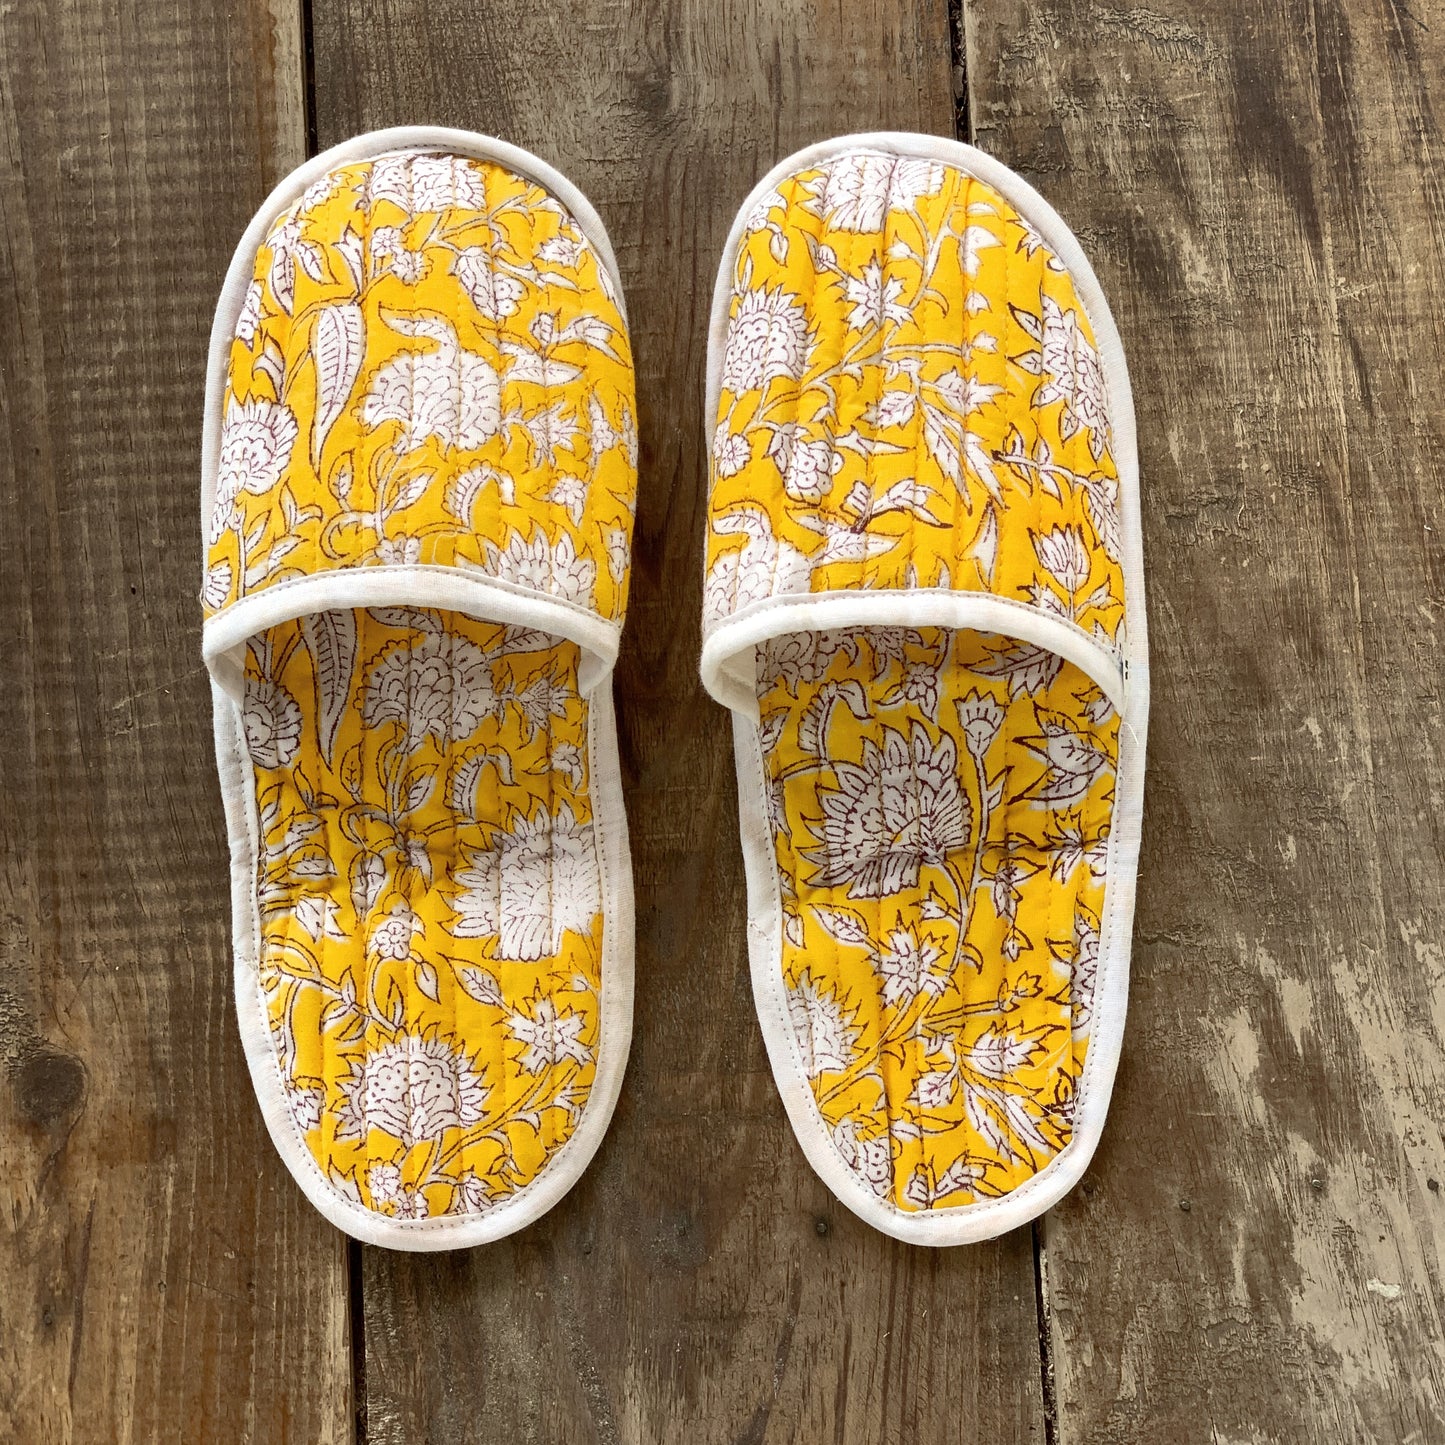 SET regalo baño · Scrunchie coletero, bolsa de aseo & zapatillas a juego · Algodón puro estampado block print en India · Gris amarillo